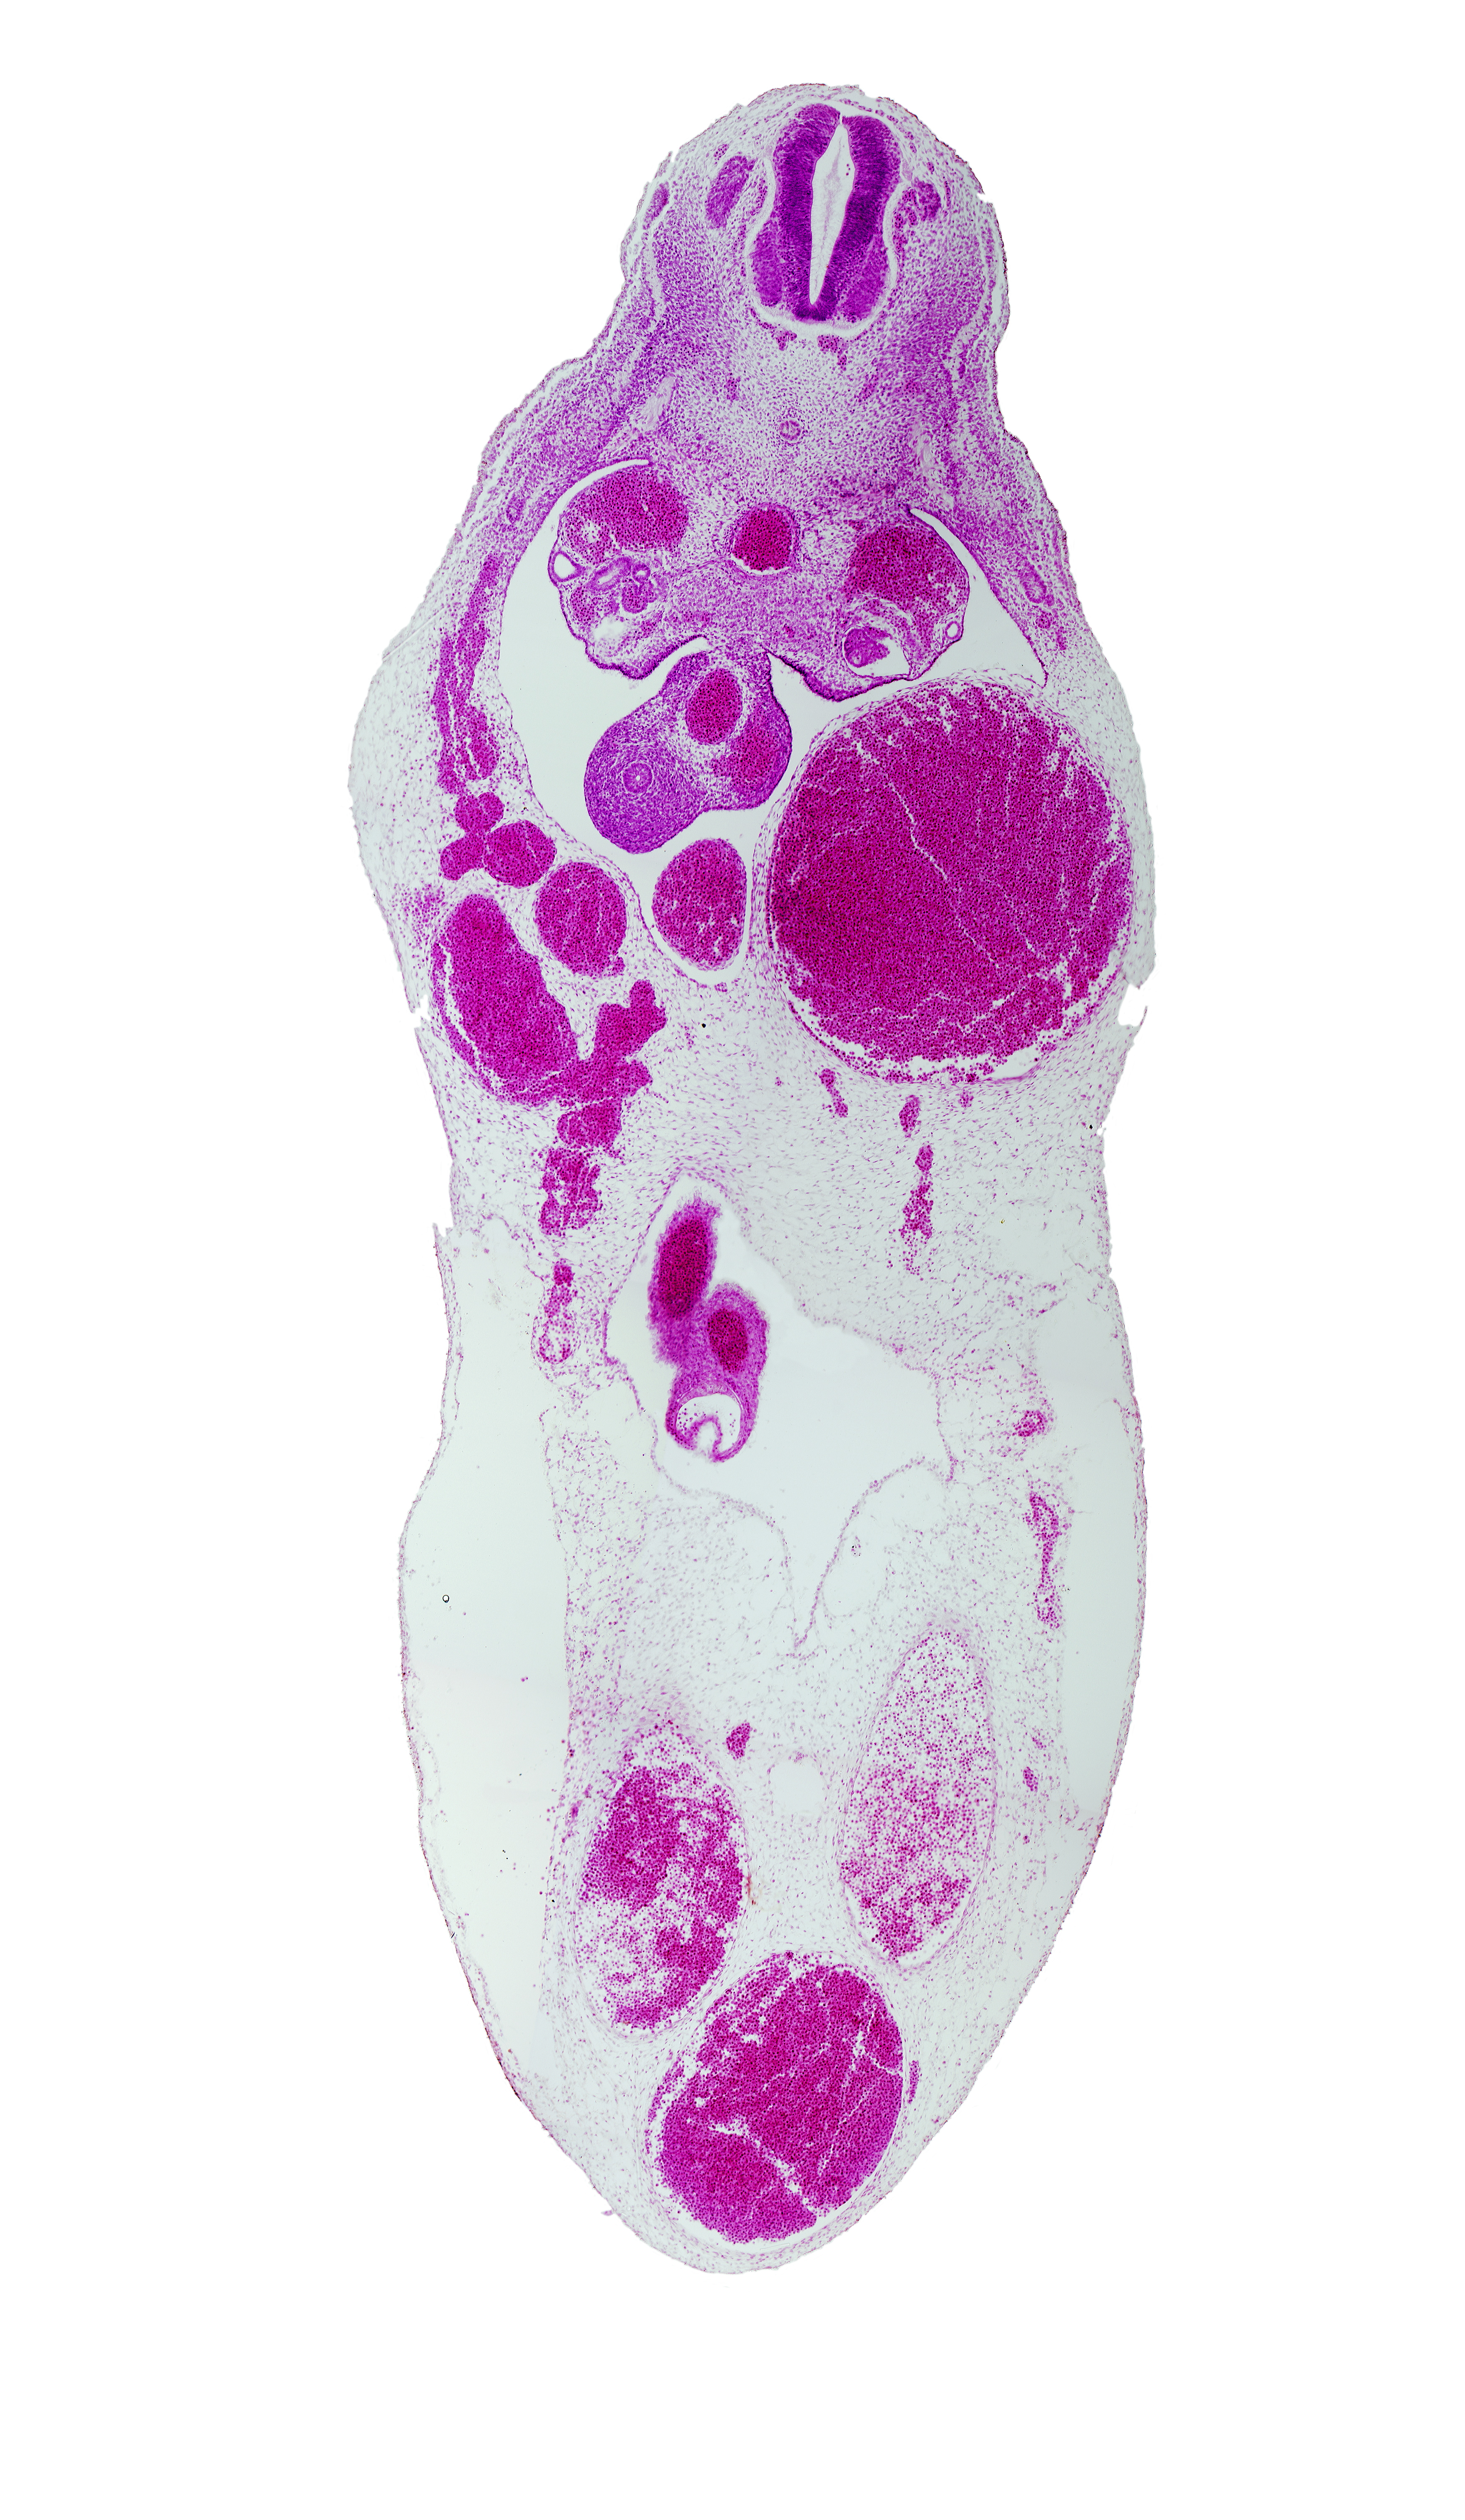 T-6 / T-7 interganglion region, allantois, aorta, gonadal ridge, left umbilical vein (congested), midgut, superior mesenteric artery, umbilical coelom, umbilical vesicle stalk remnant, vitelline (omphalomesenteric) artery, vitelline (omphalomesenteric) vein